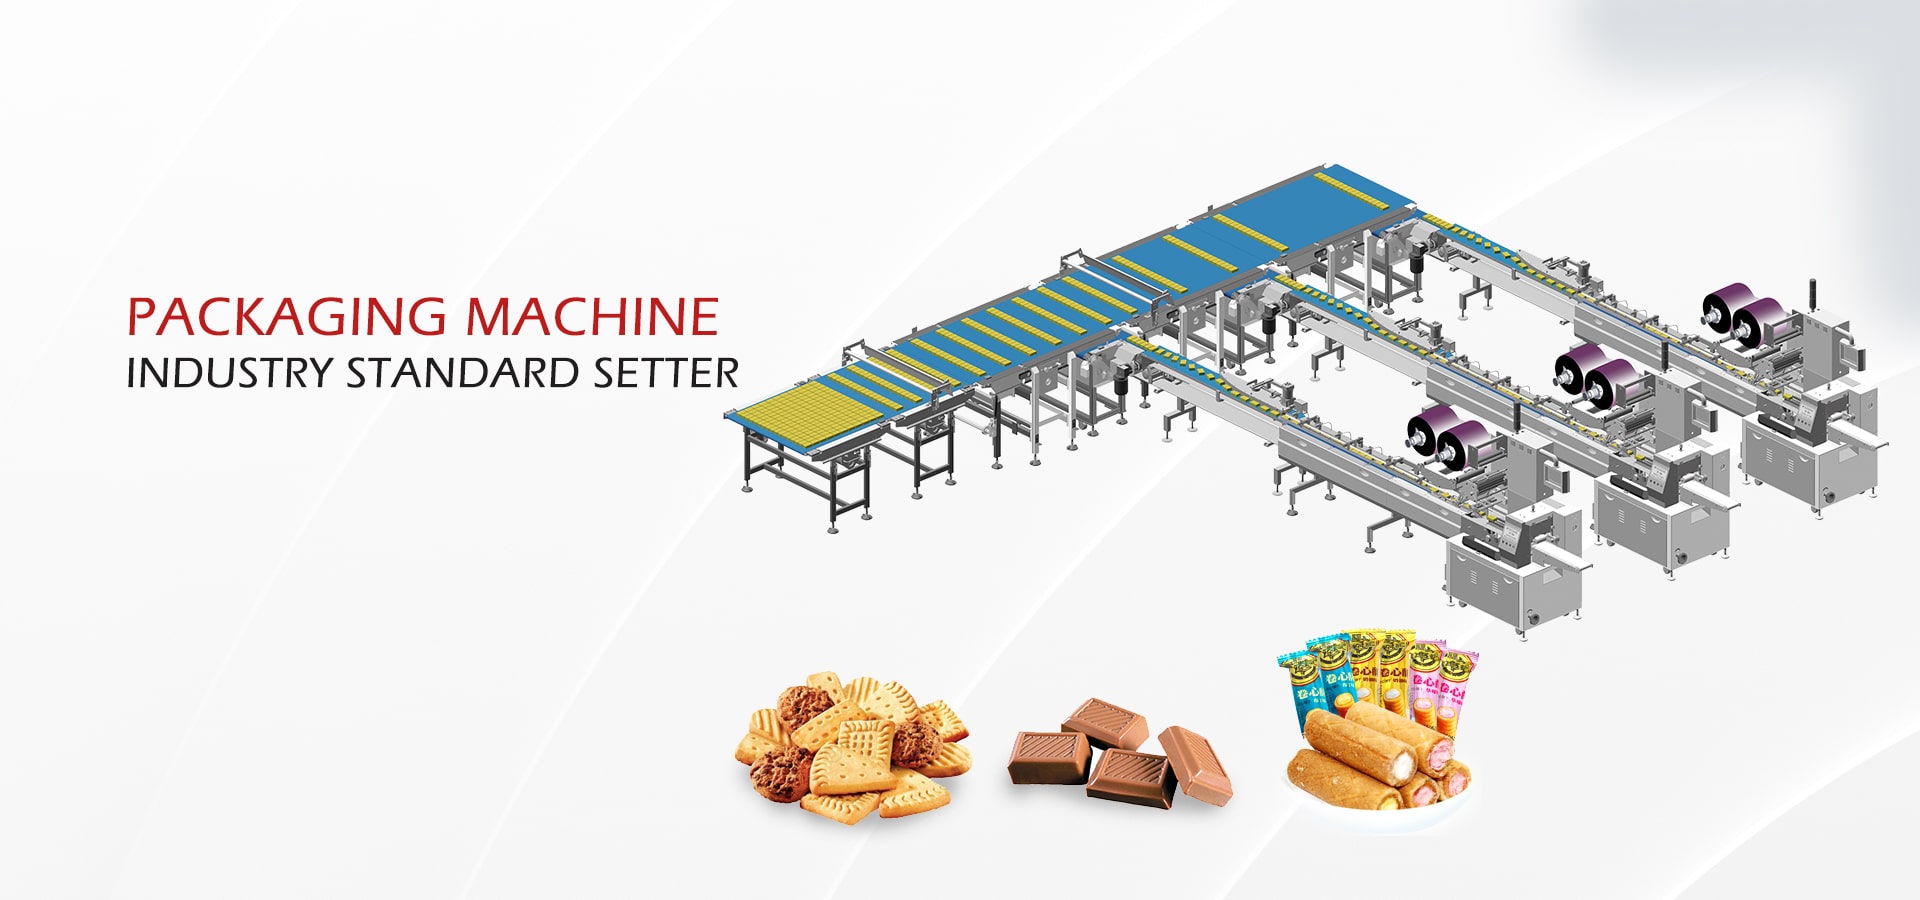 चीन के शीर्ष पैकेजिंग मशीन निर्माता Foshan Ruipuhua मशीनरी उपकरण कं, लिमिटेड।